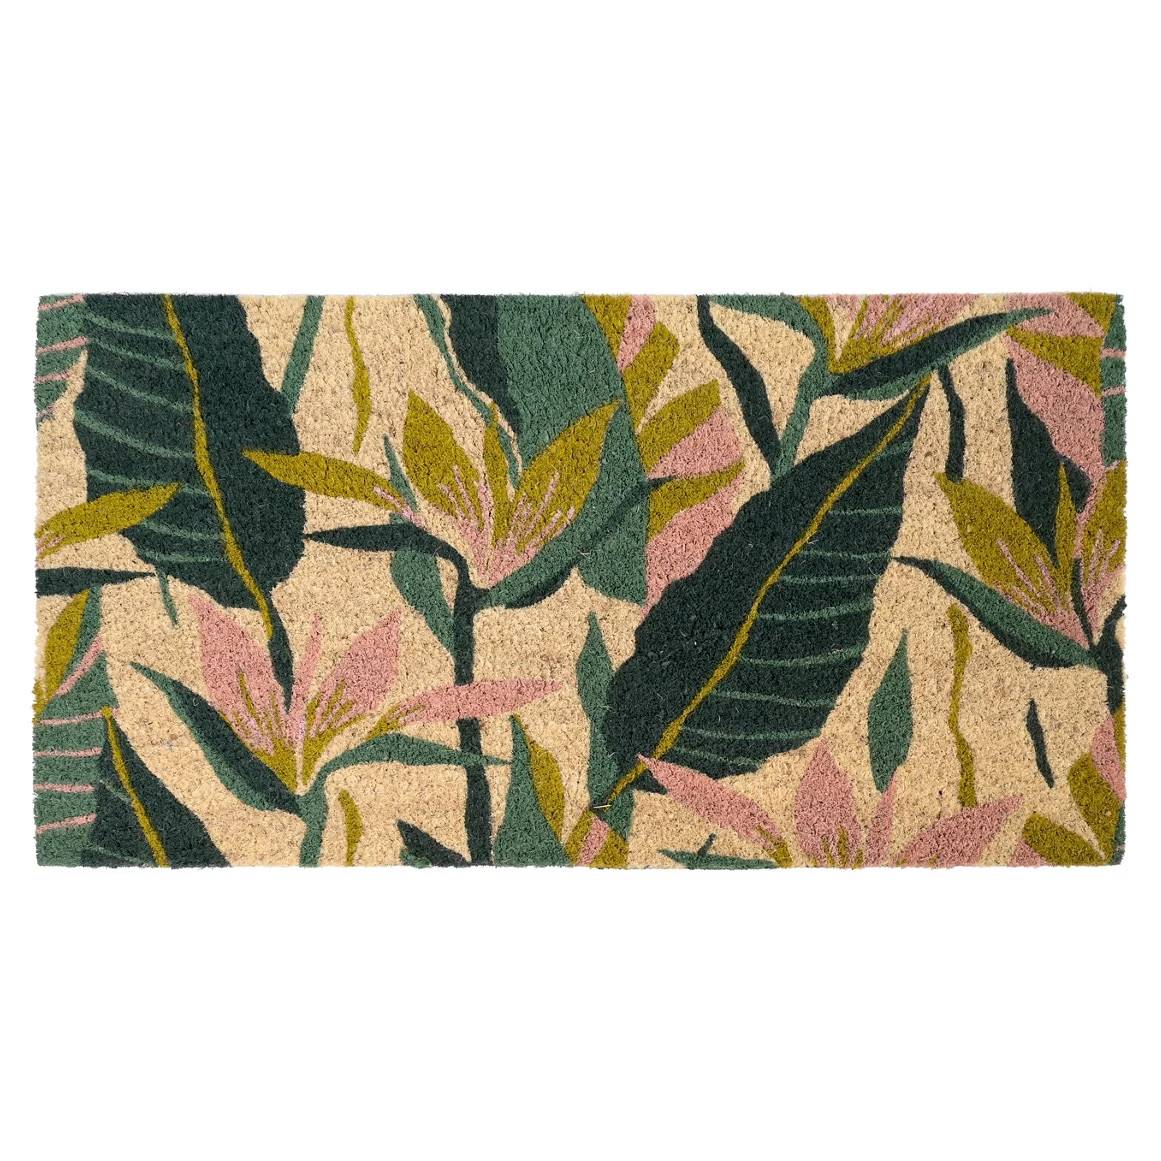 Felpudos originales: felpudo multicolor de coco y pvc con dibujos de hojas silvestres de Leroy Merlin. 